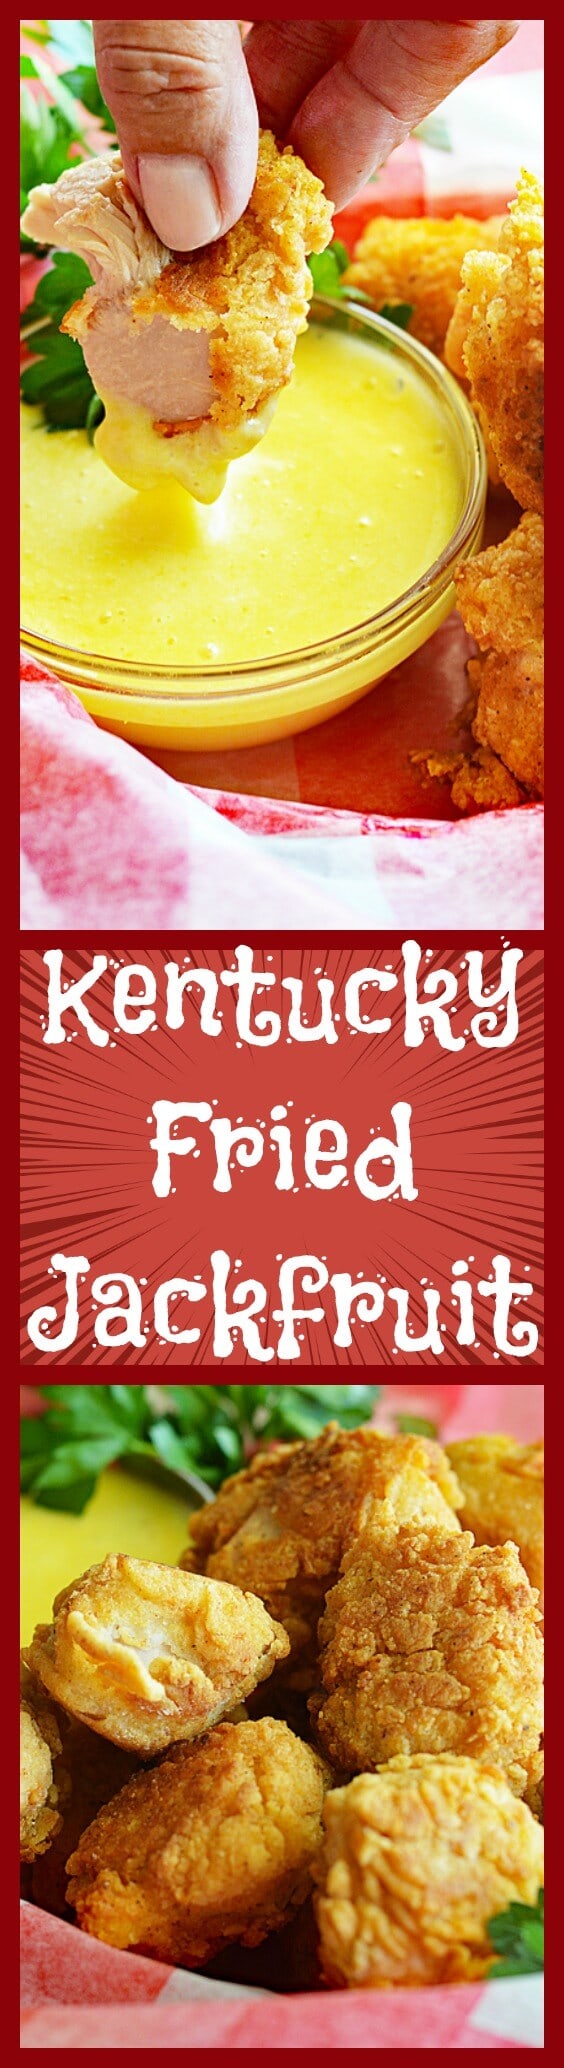 Kentucky Fried Jackfruit